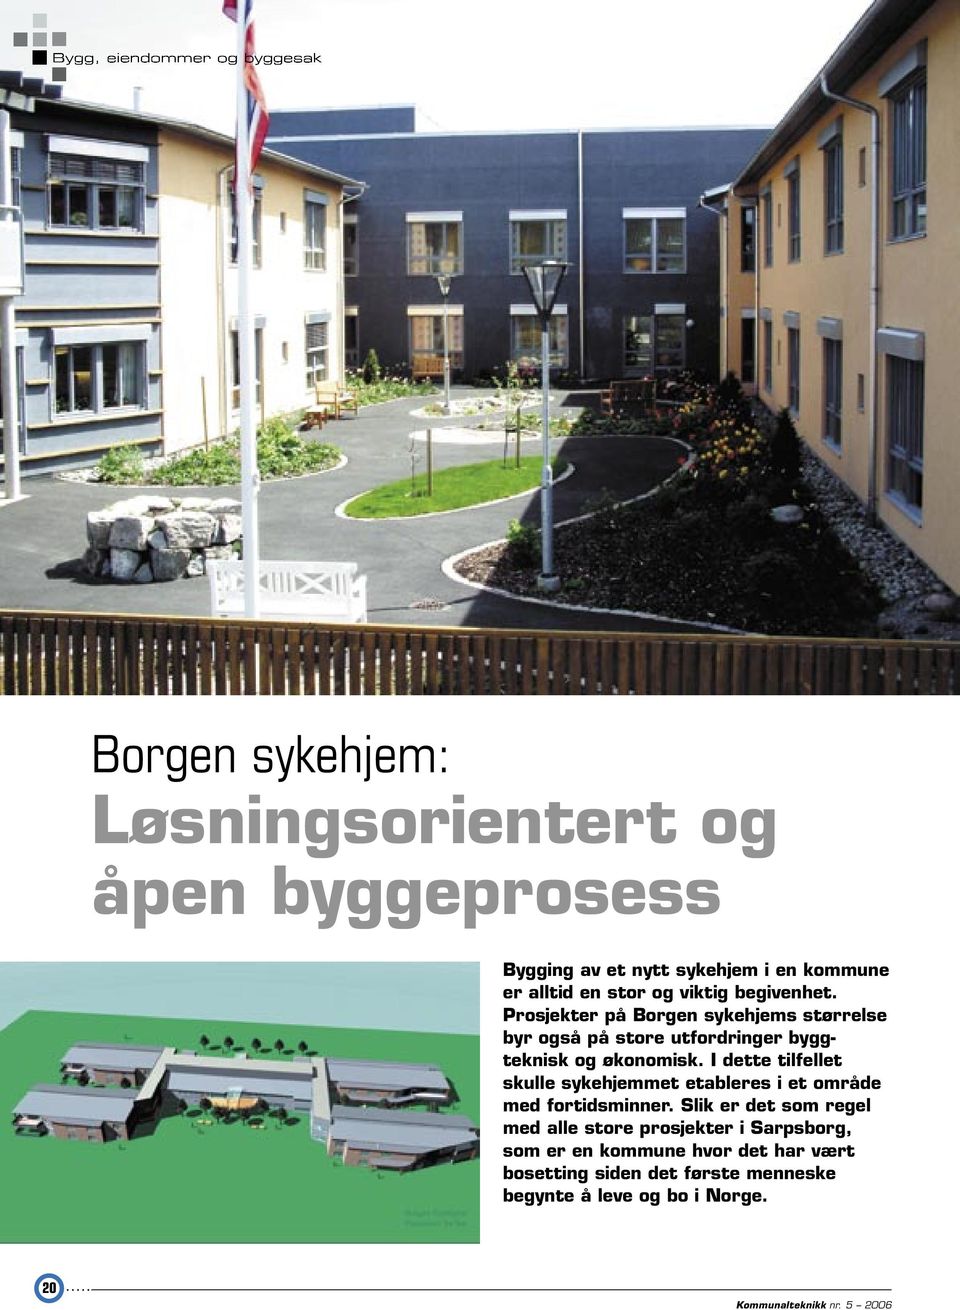 Prosjekter på Borgen sykehjems størrelse byr også på store utfordringer byggteknisk og økonomisk.